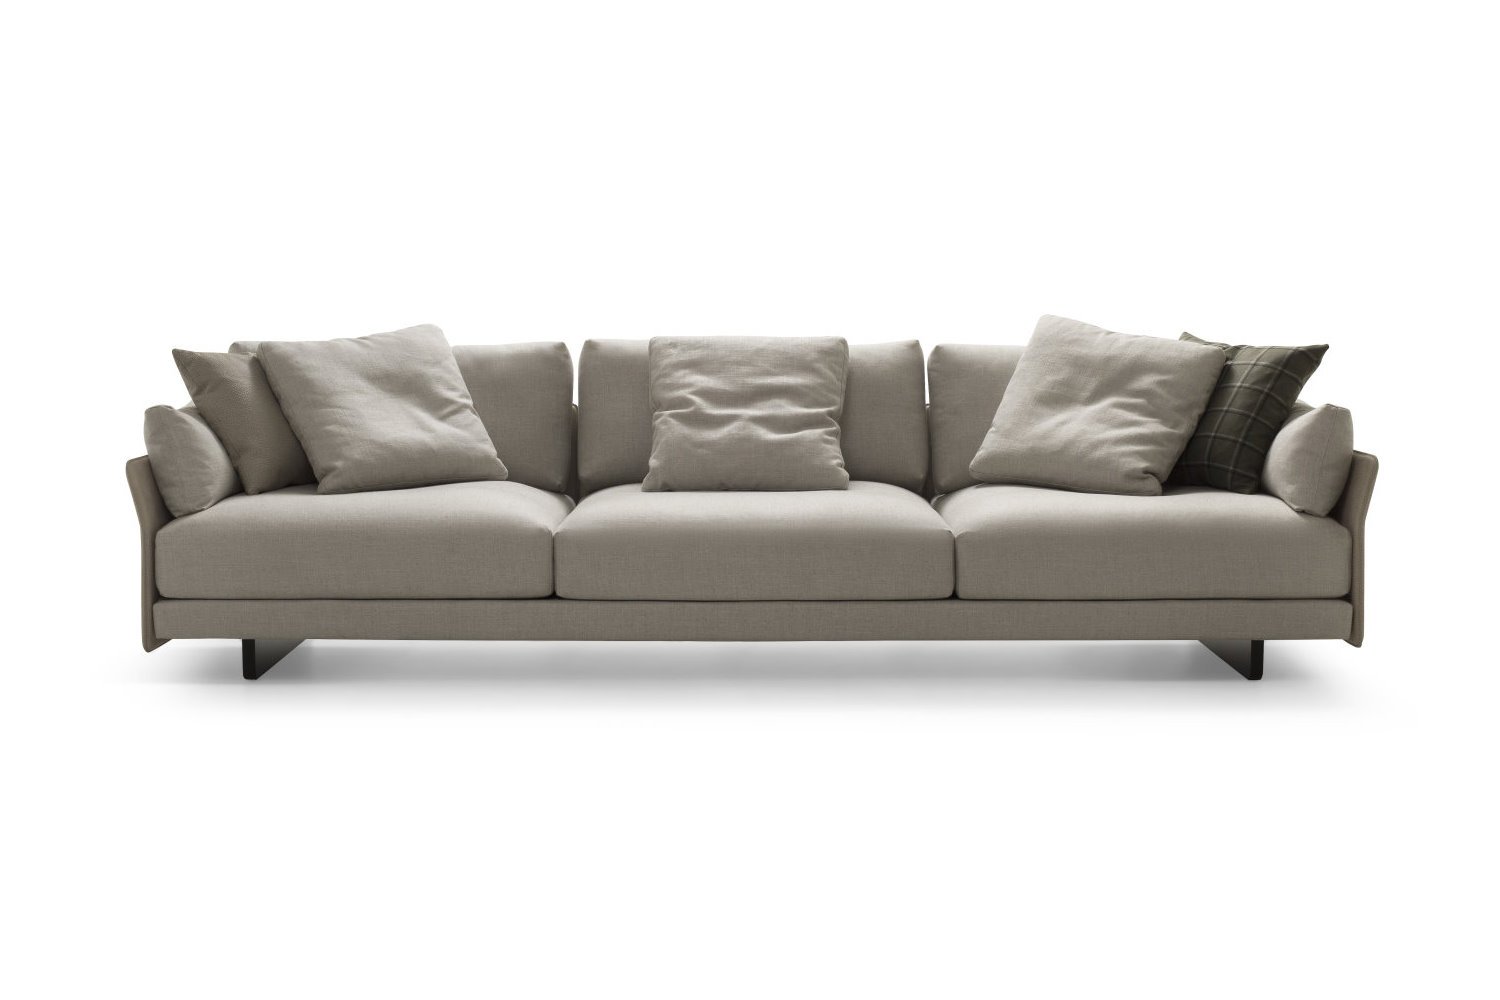 Platzsparendes Sofa mit schmalen Armlehnen und schlanker Rückenlehne Murphy